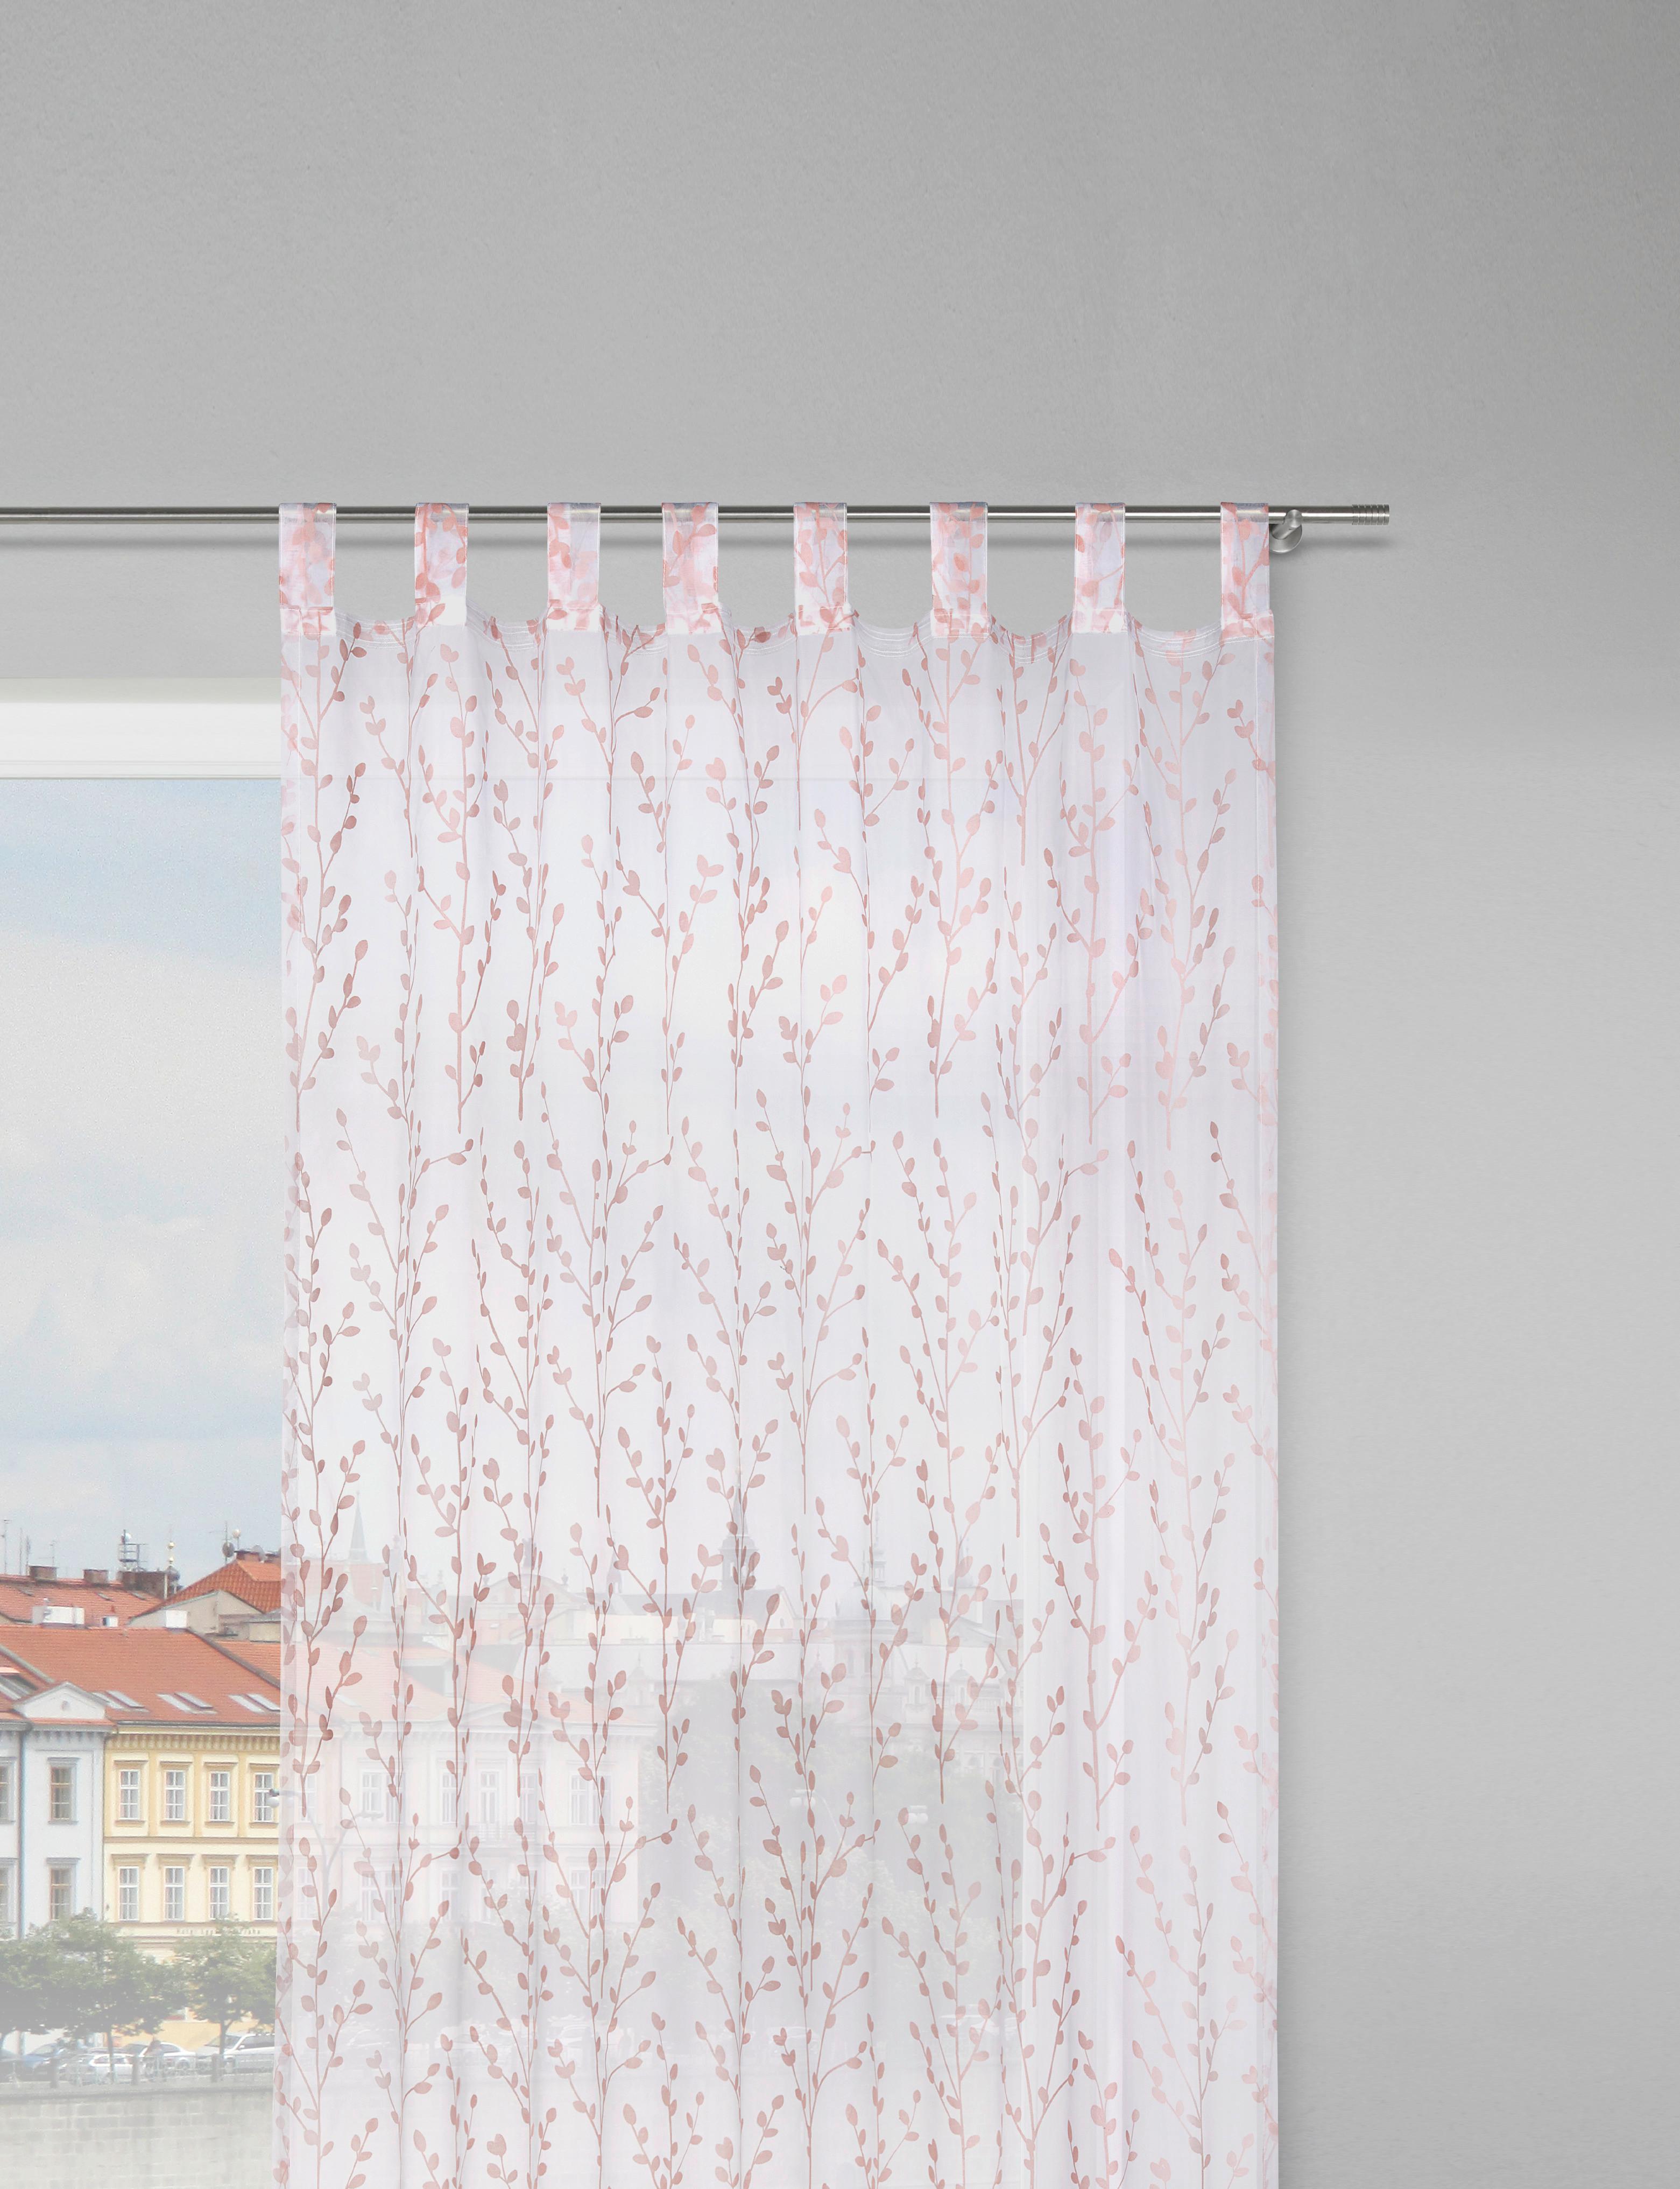 Záves S Pútkami Christiane, 140/250cm, Ružová - staroružová, Konvenčný, textil (140/250cm) - Modern Living